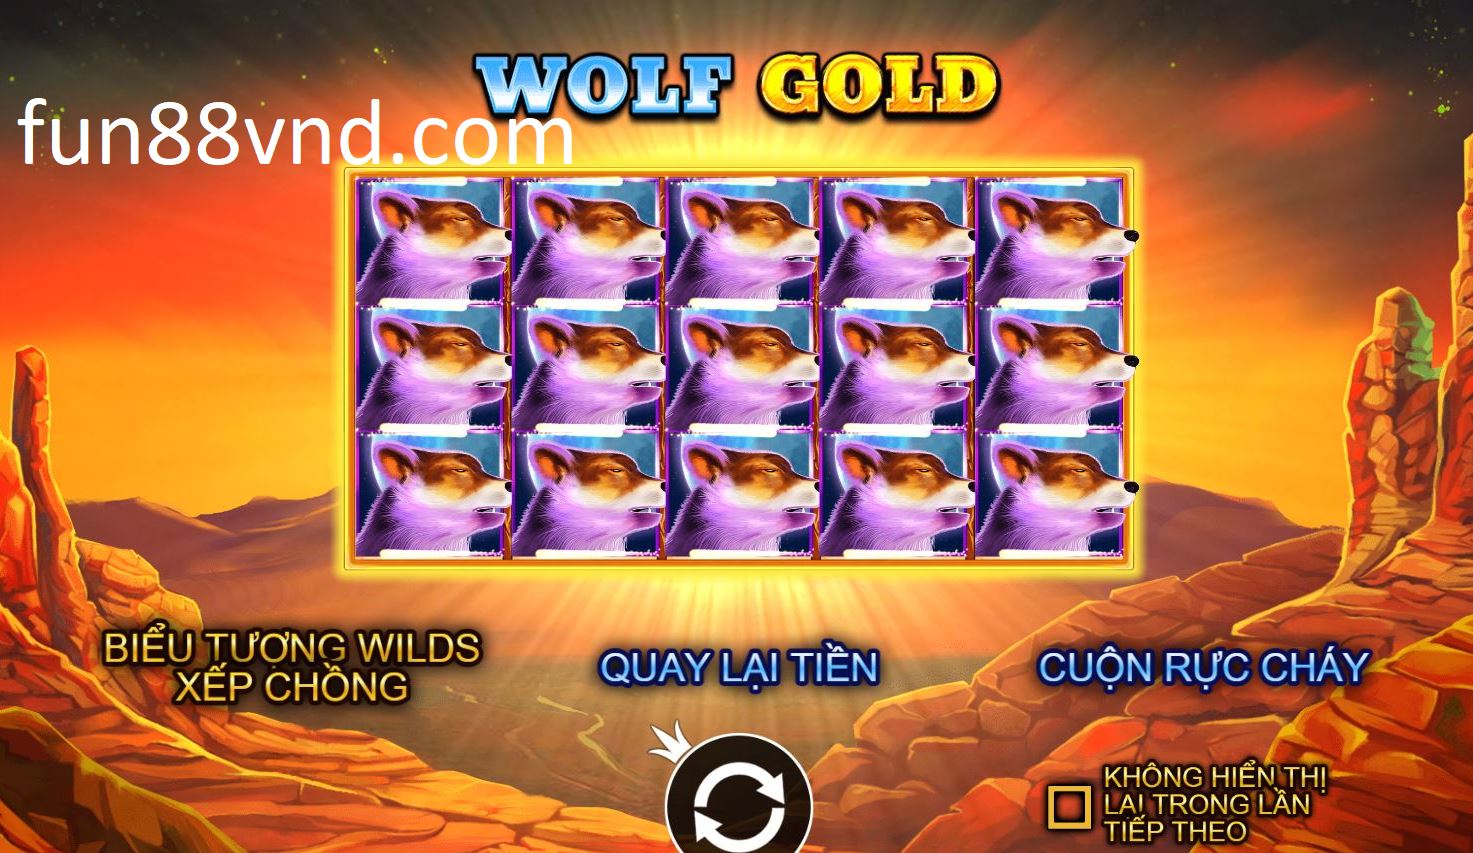 Giới thiệu game giải trí Wolf Gold tại Fun88